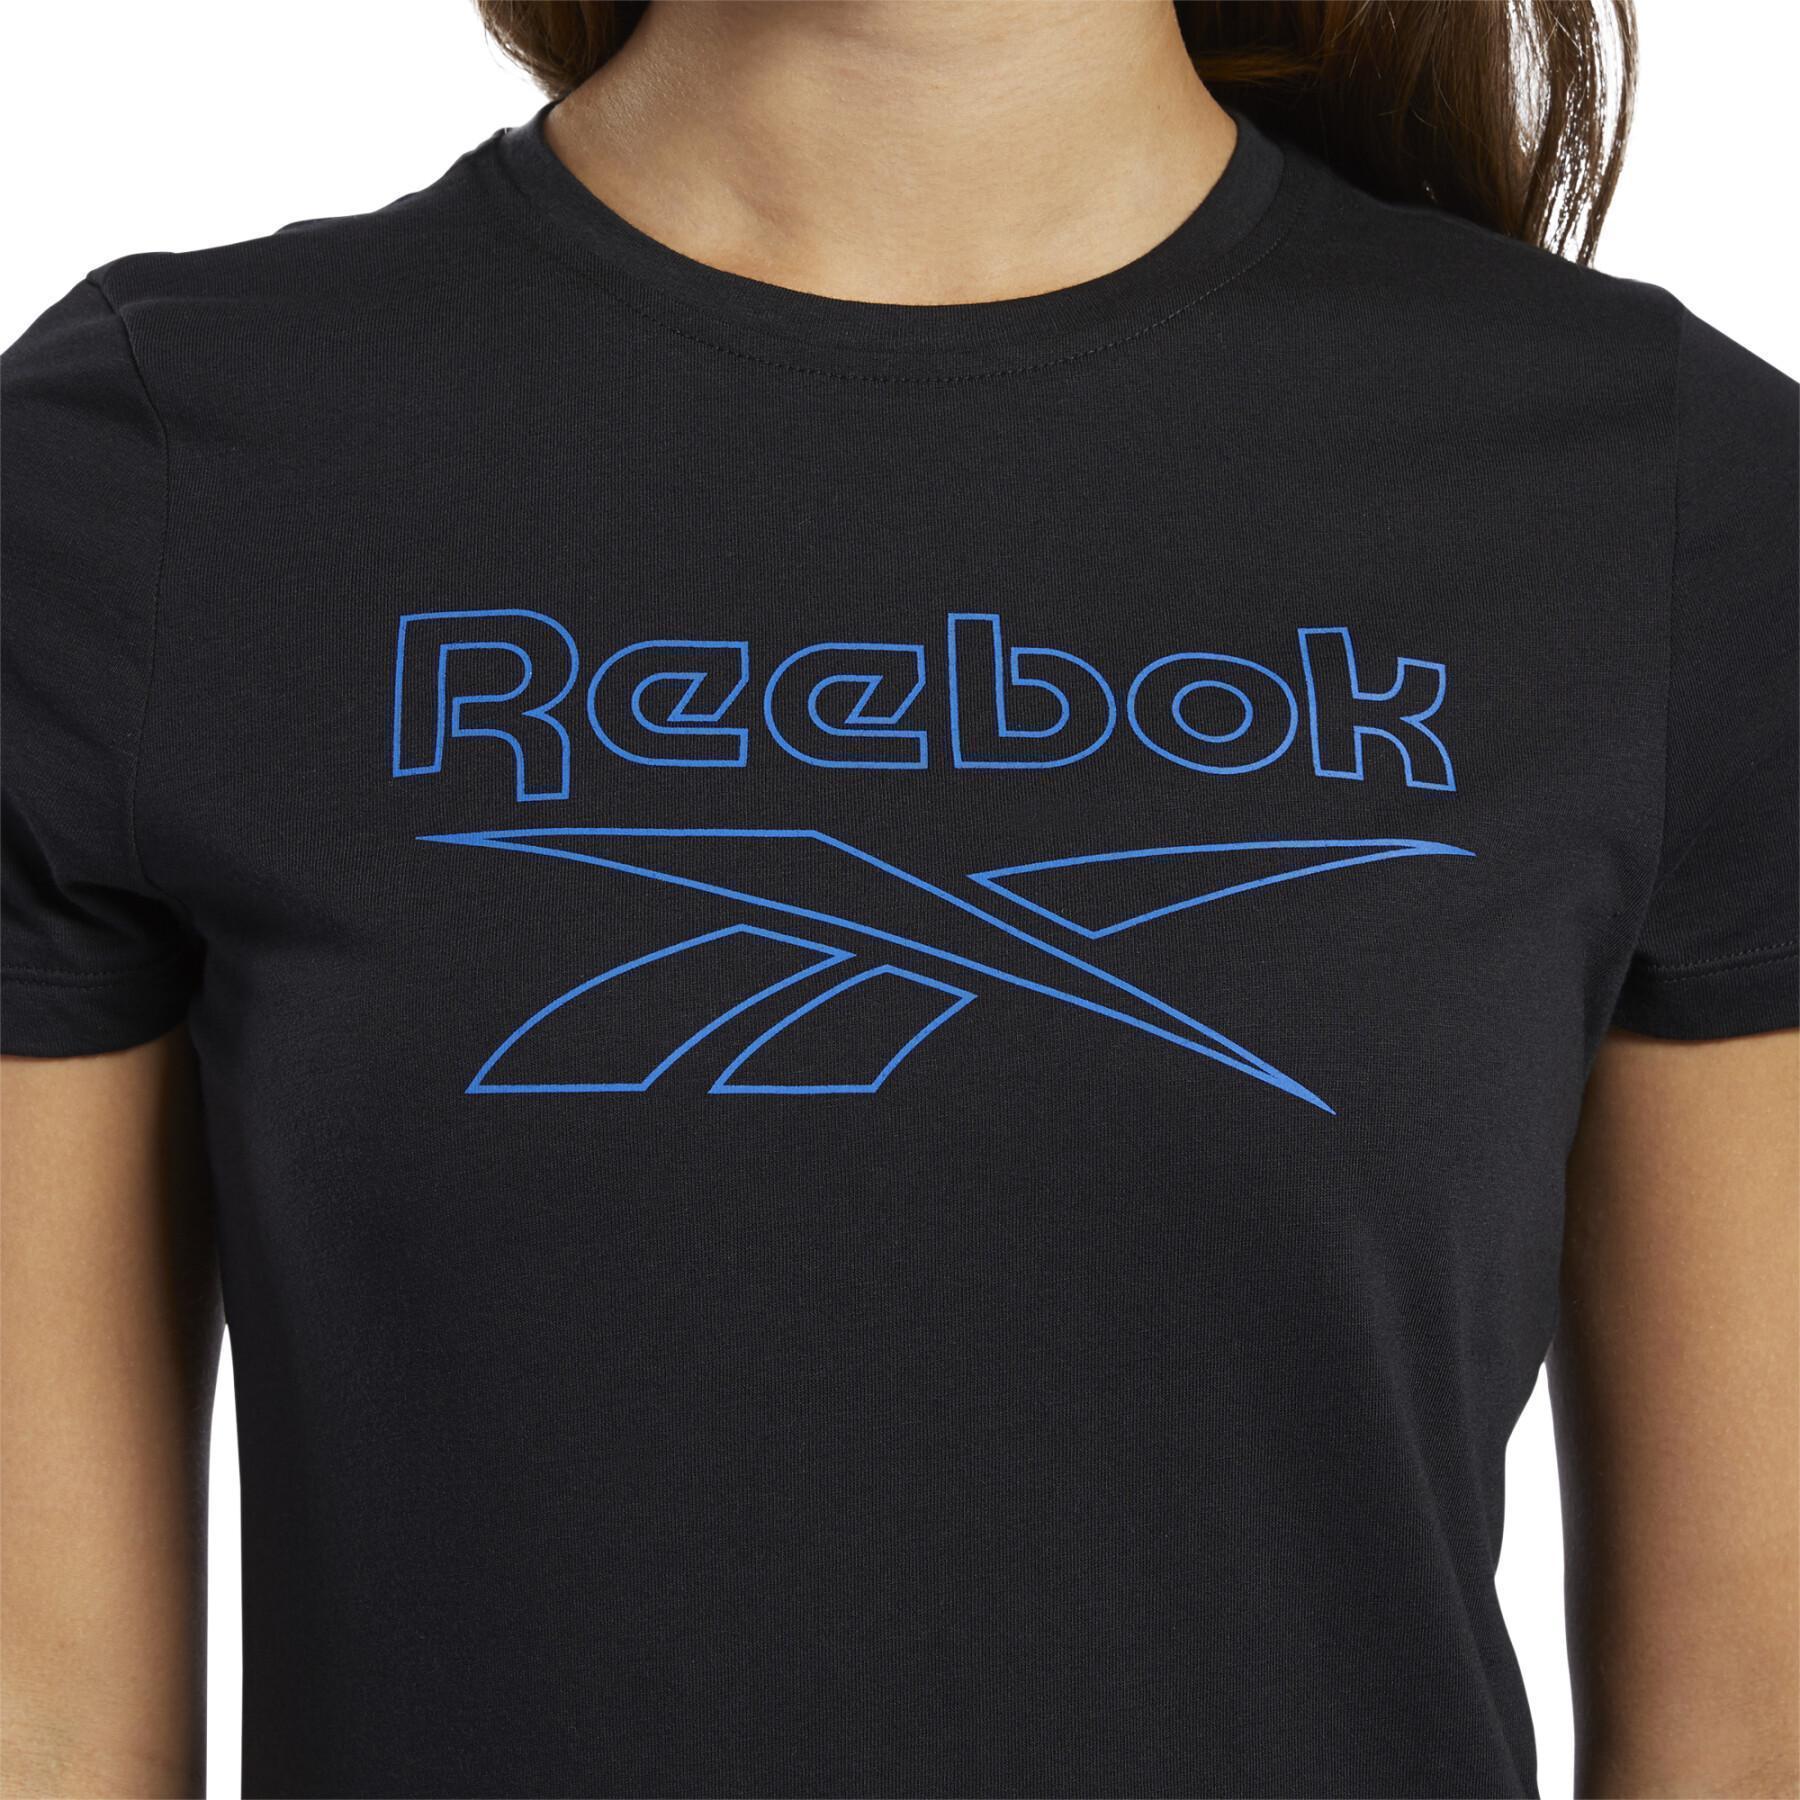 Camiseta feminina Reebok Essentials Graphic Delta